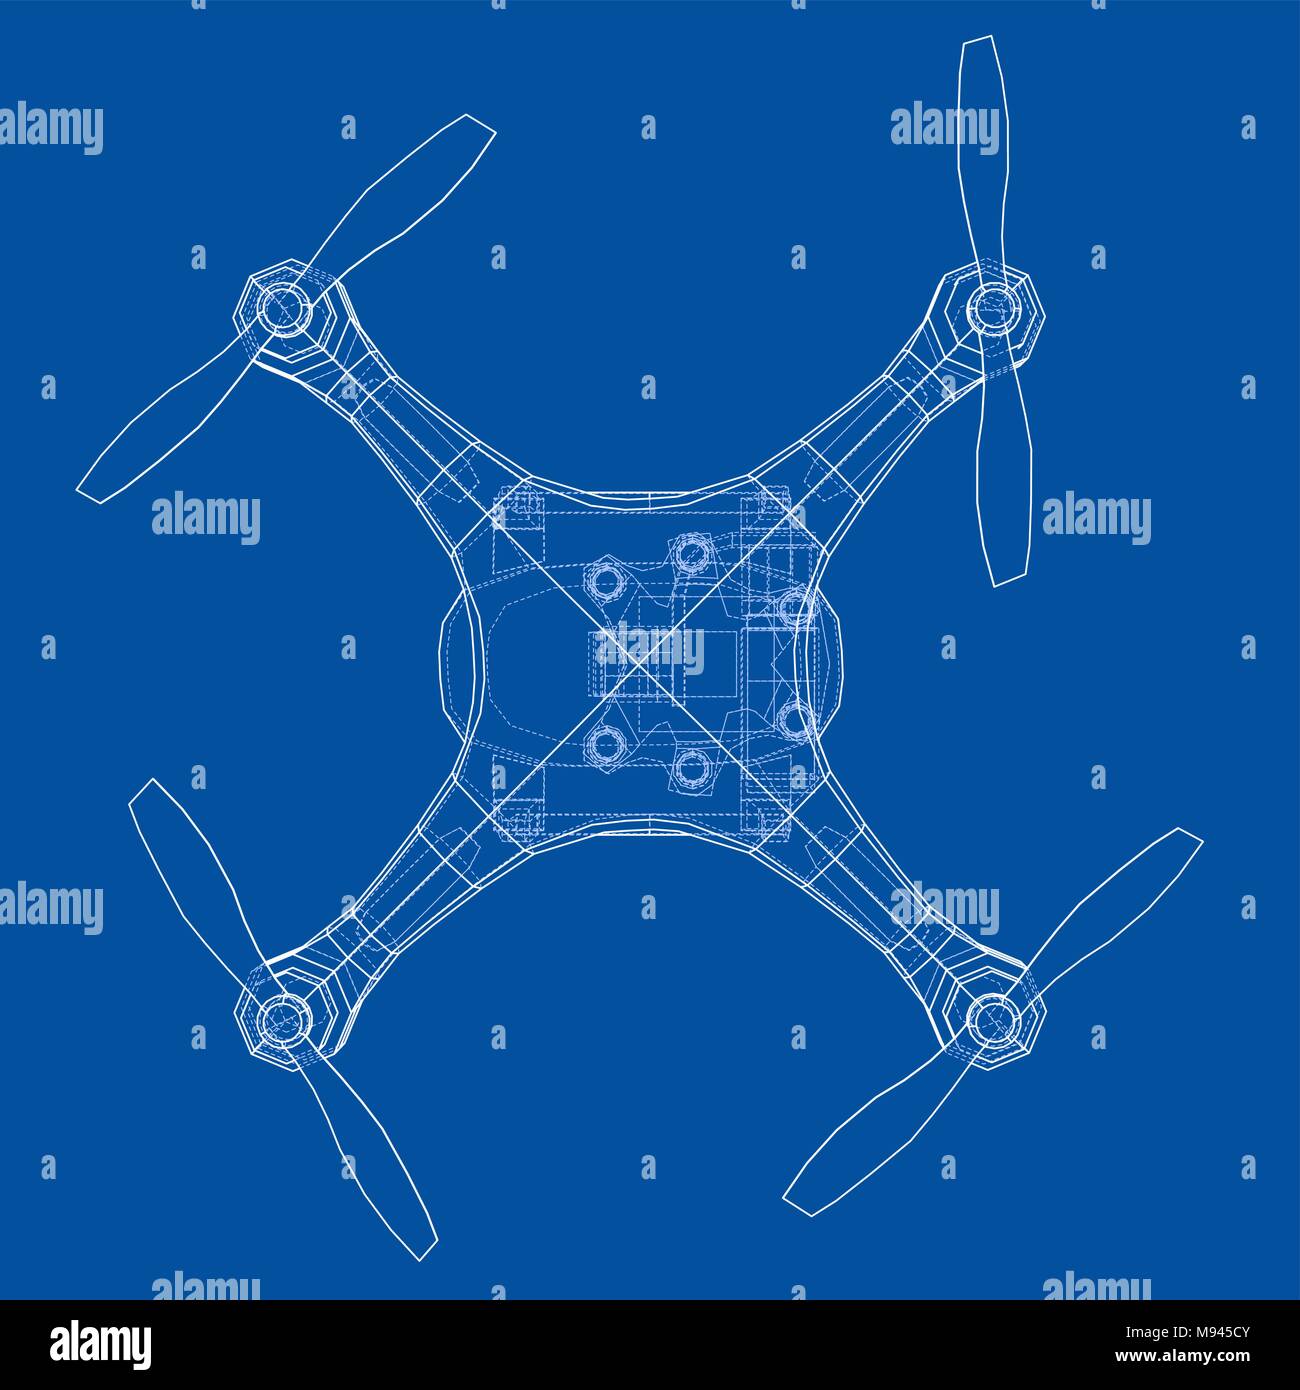 Qadrocopter or drone. Vector Stock Vector